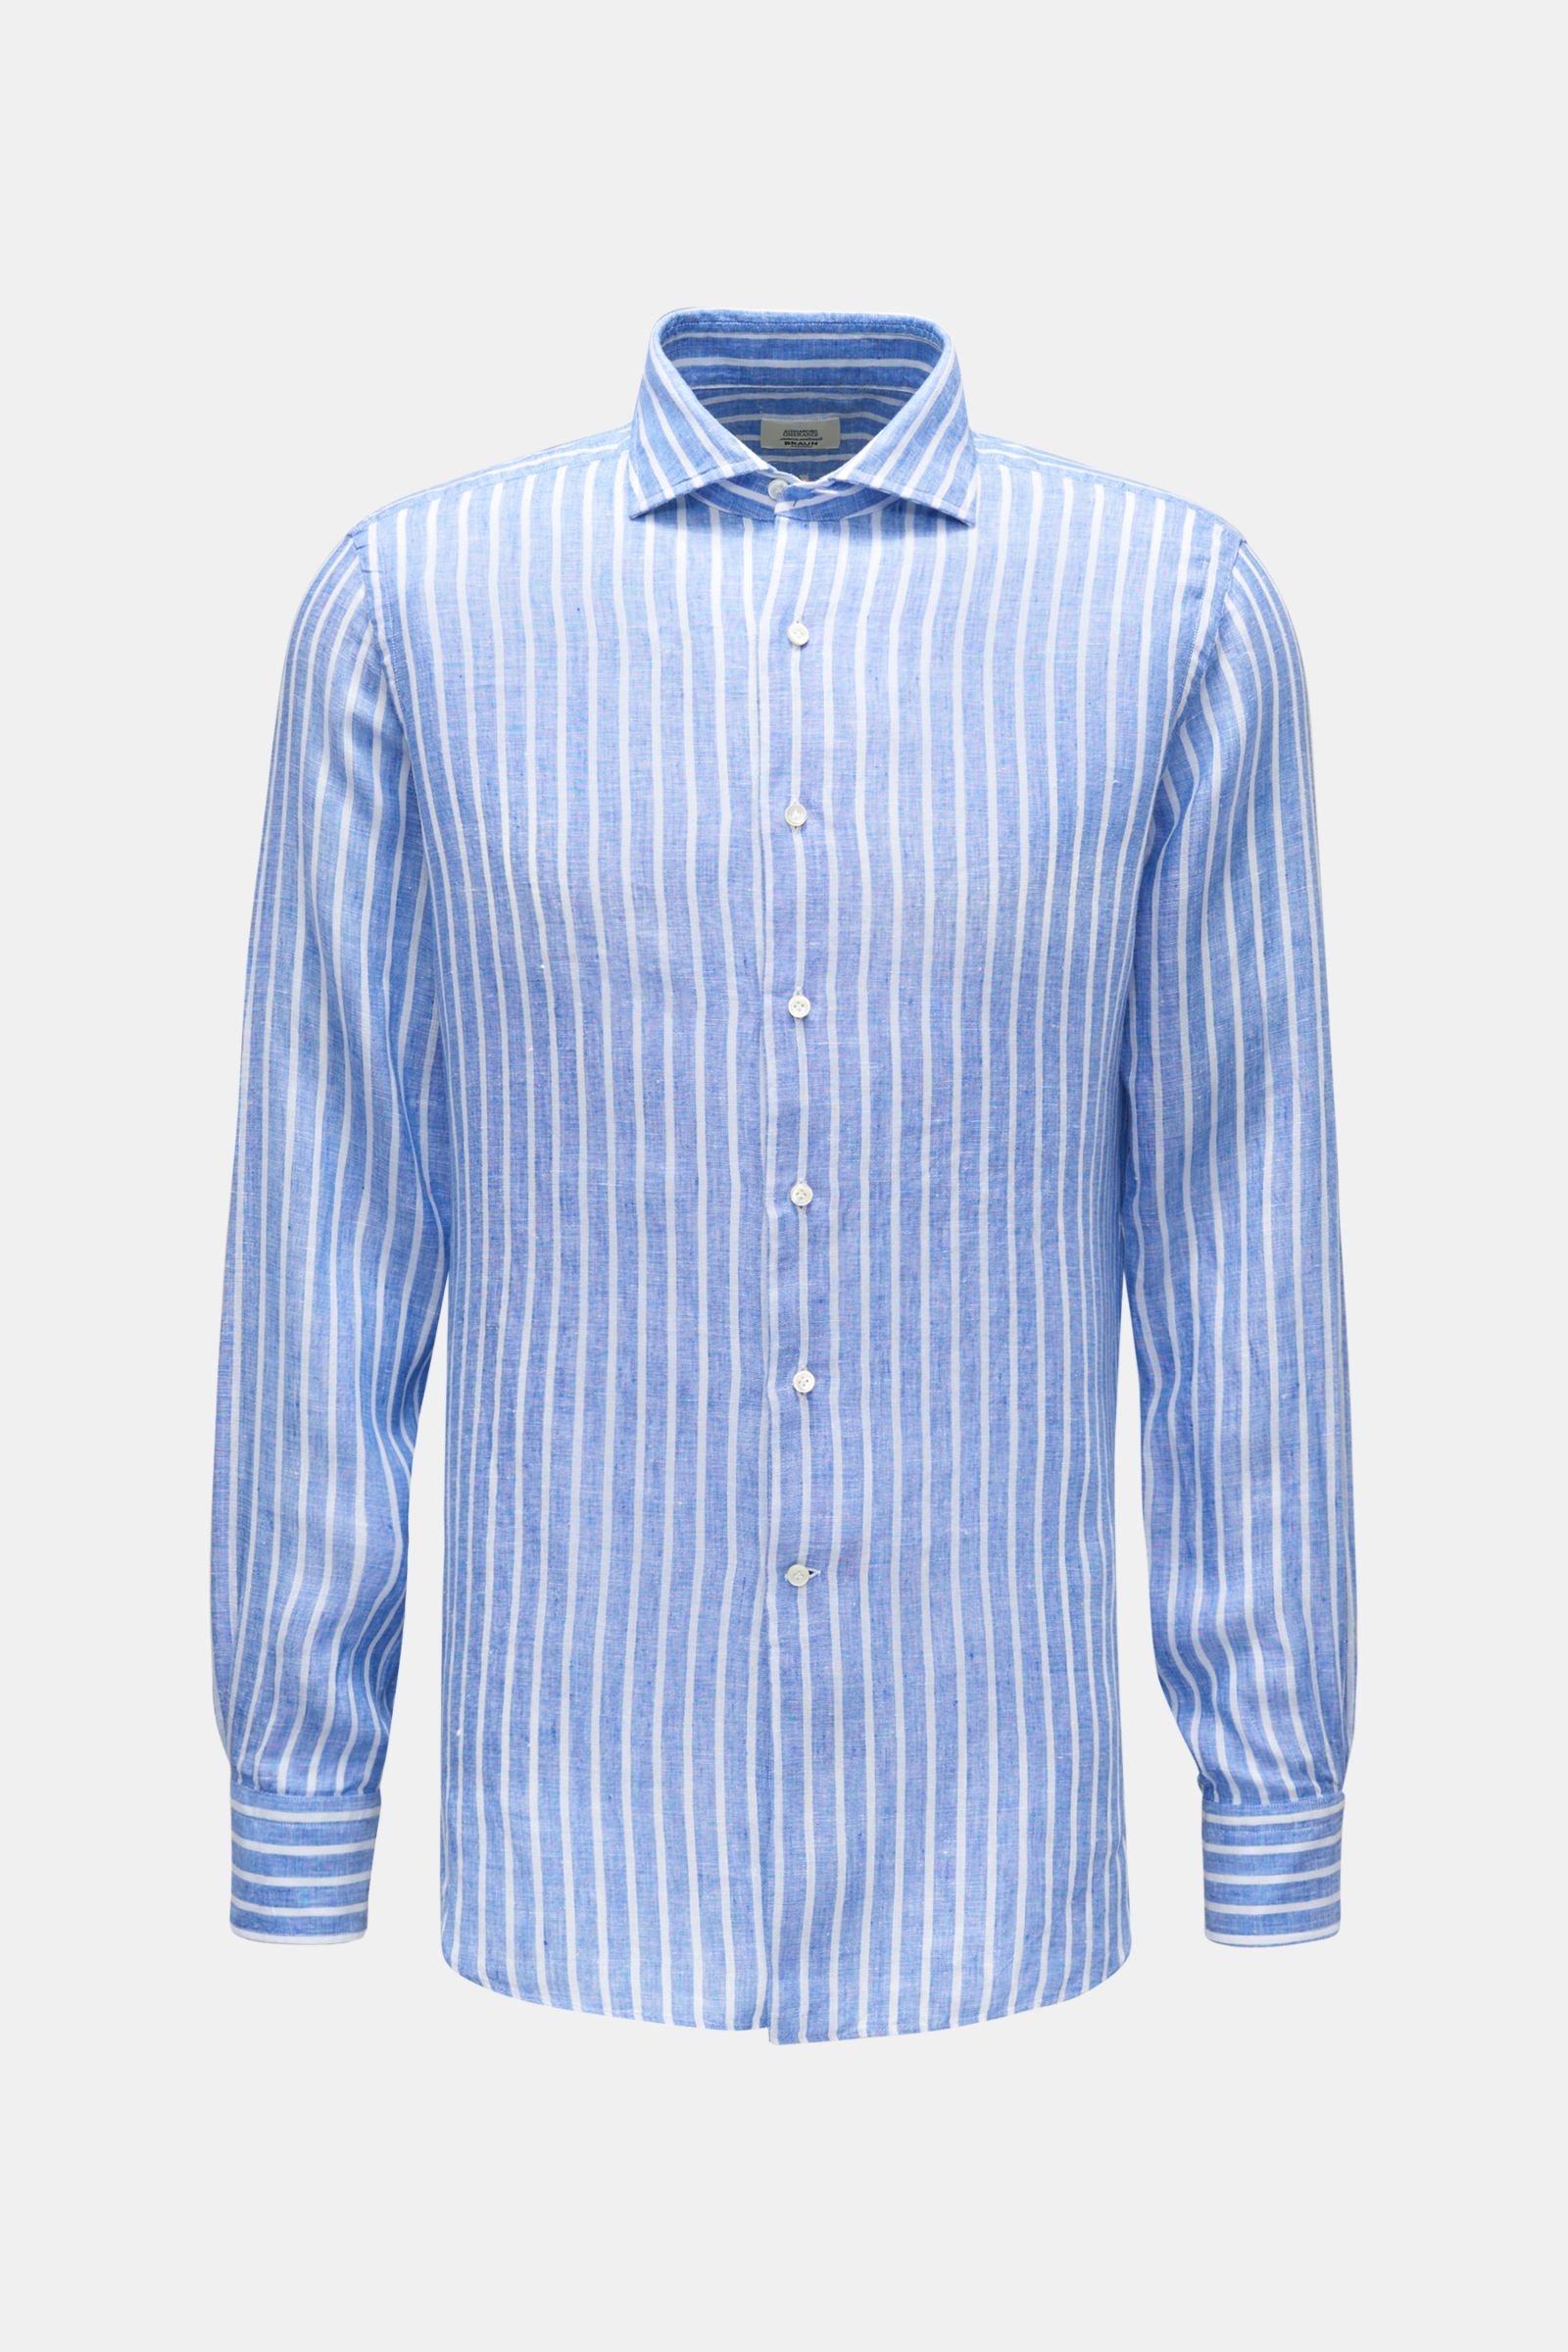 Linen shirt shark collar smoky blue/white striped